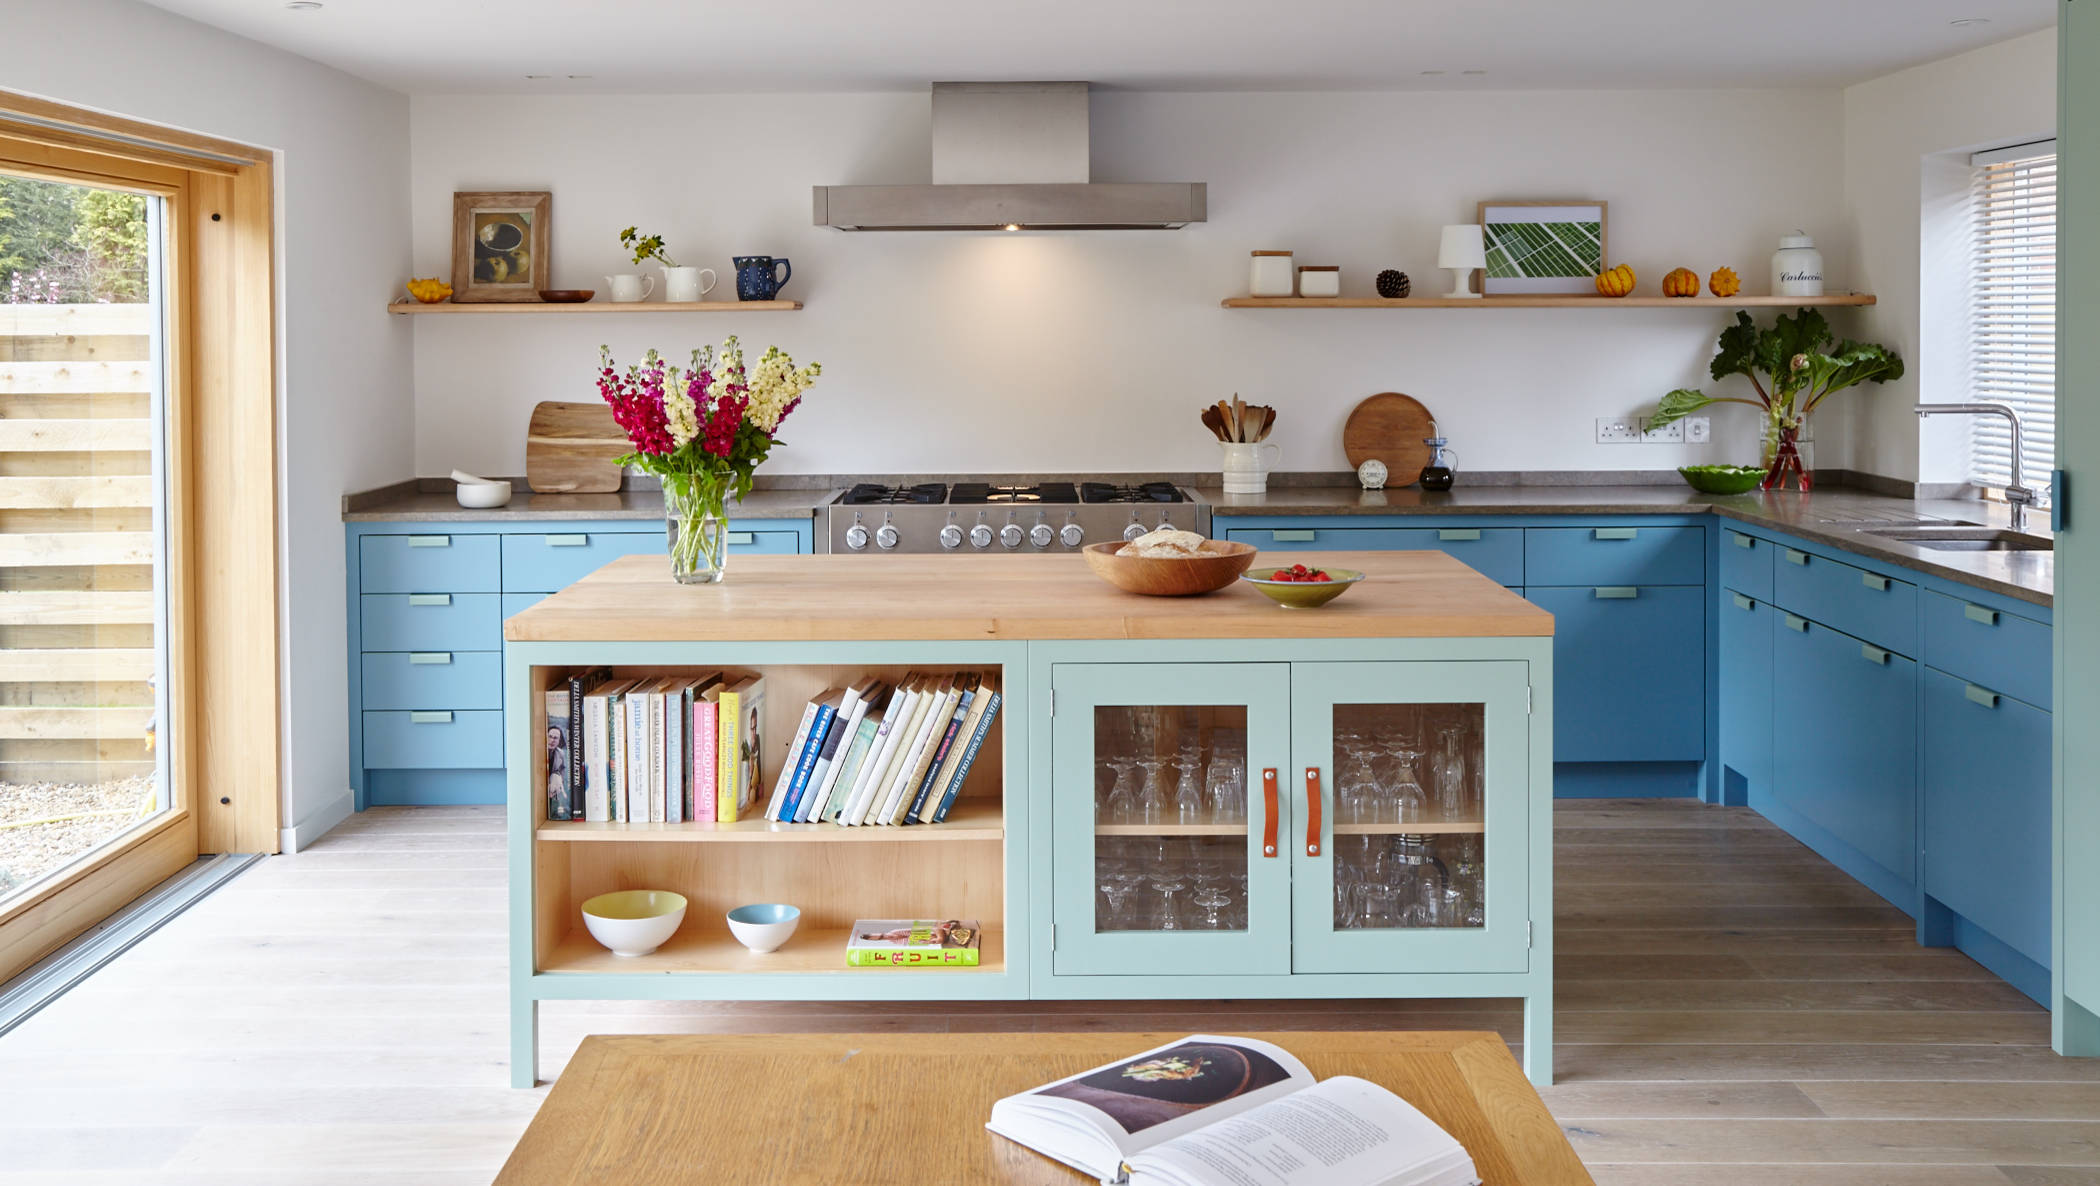 Unit colors. Бело голубая кухня с полками. Кухонная тумба современная голубая.